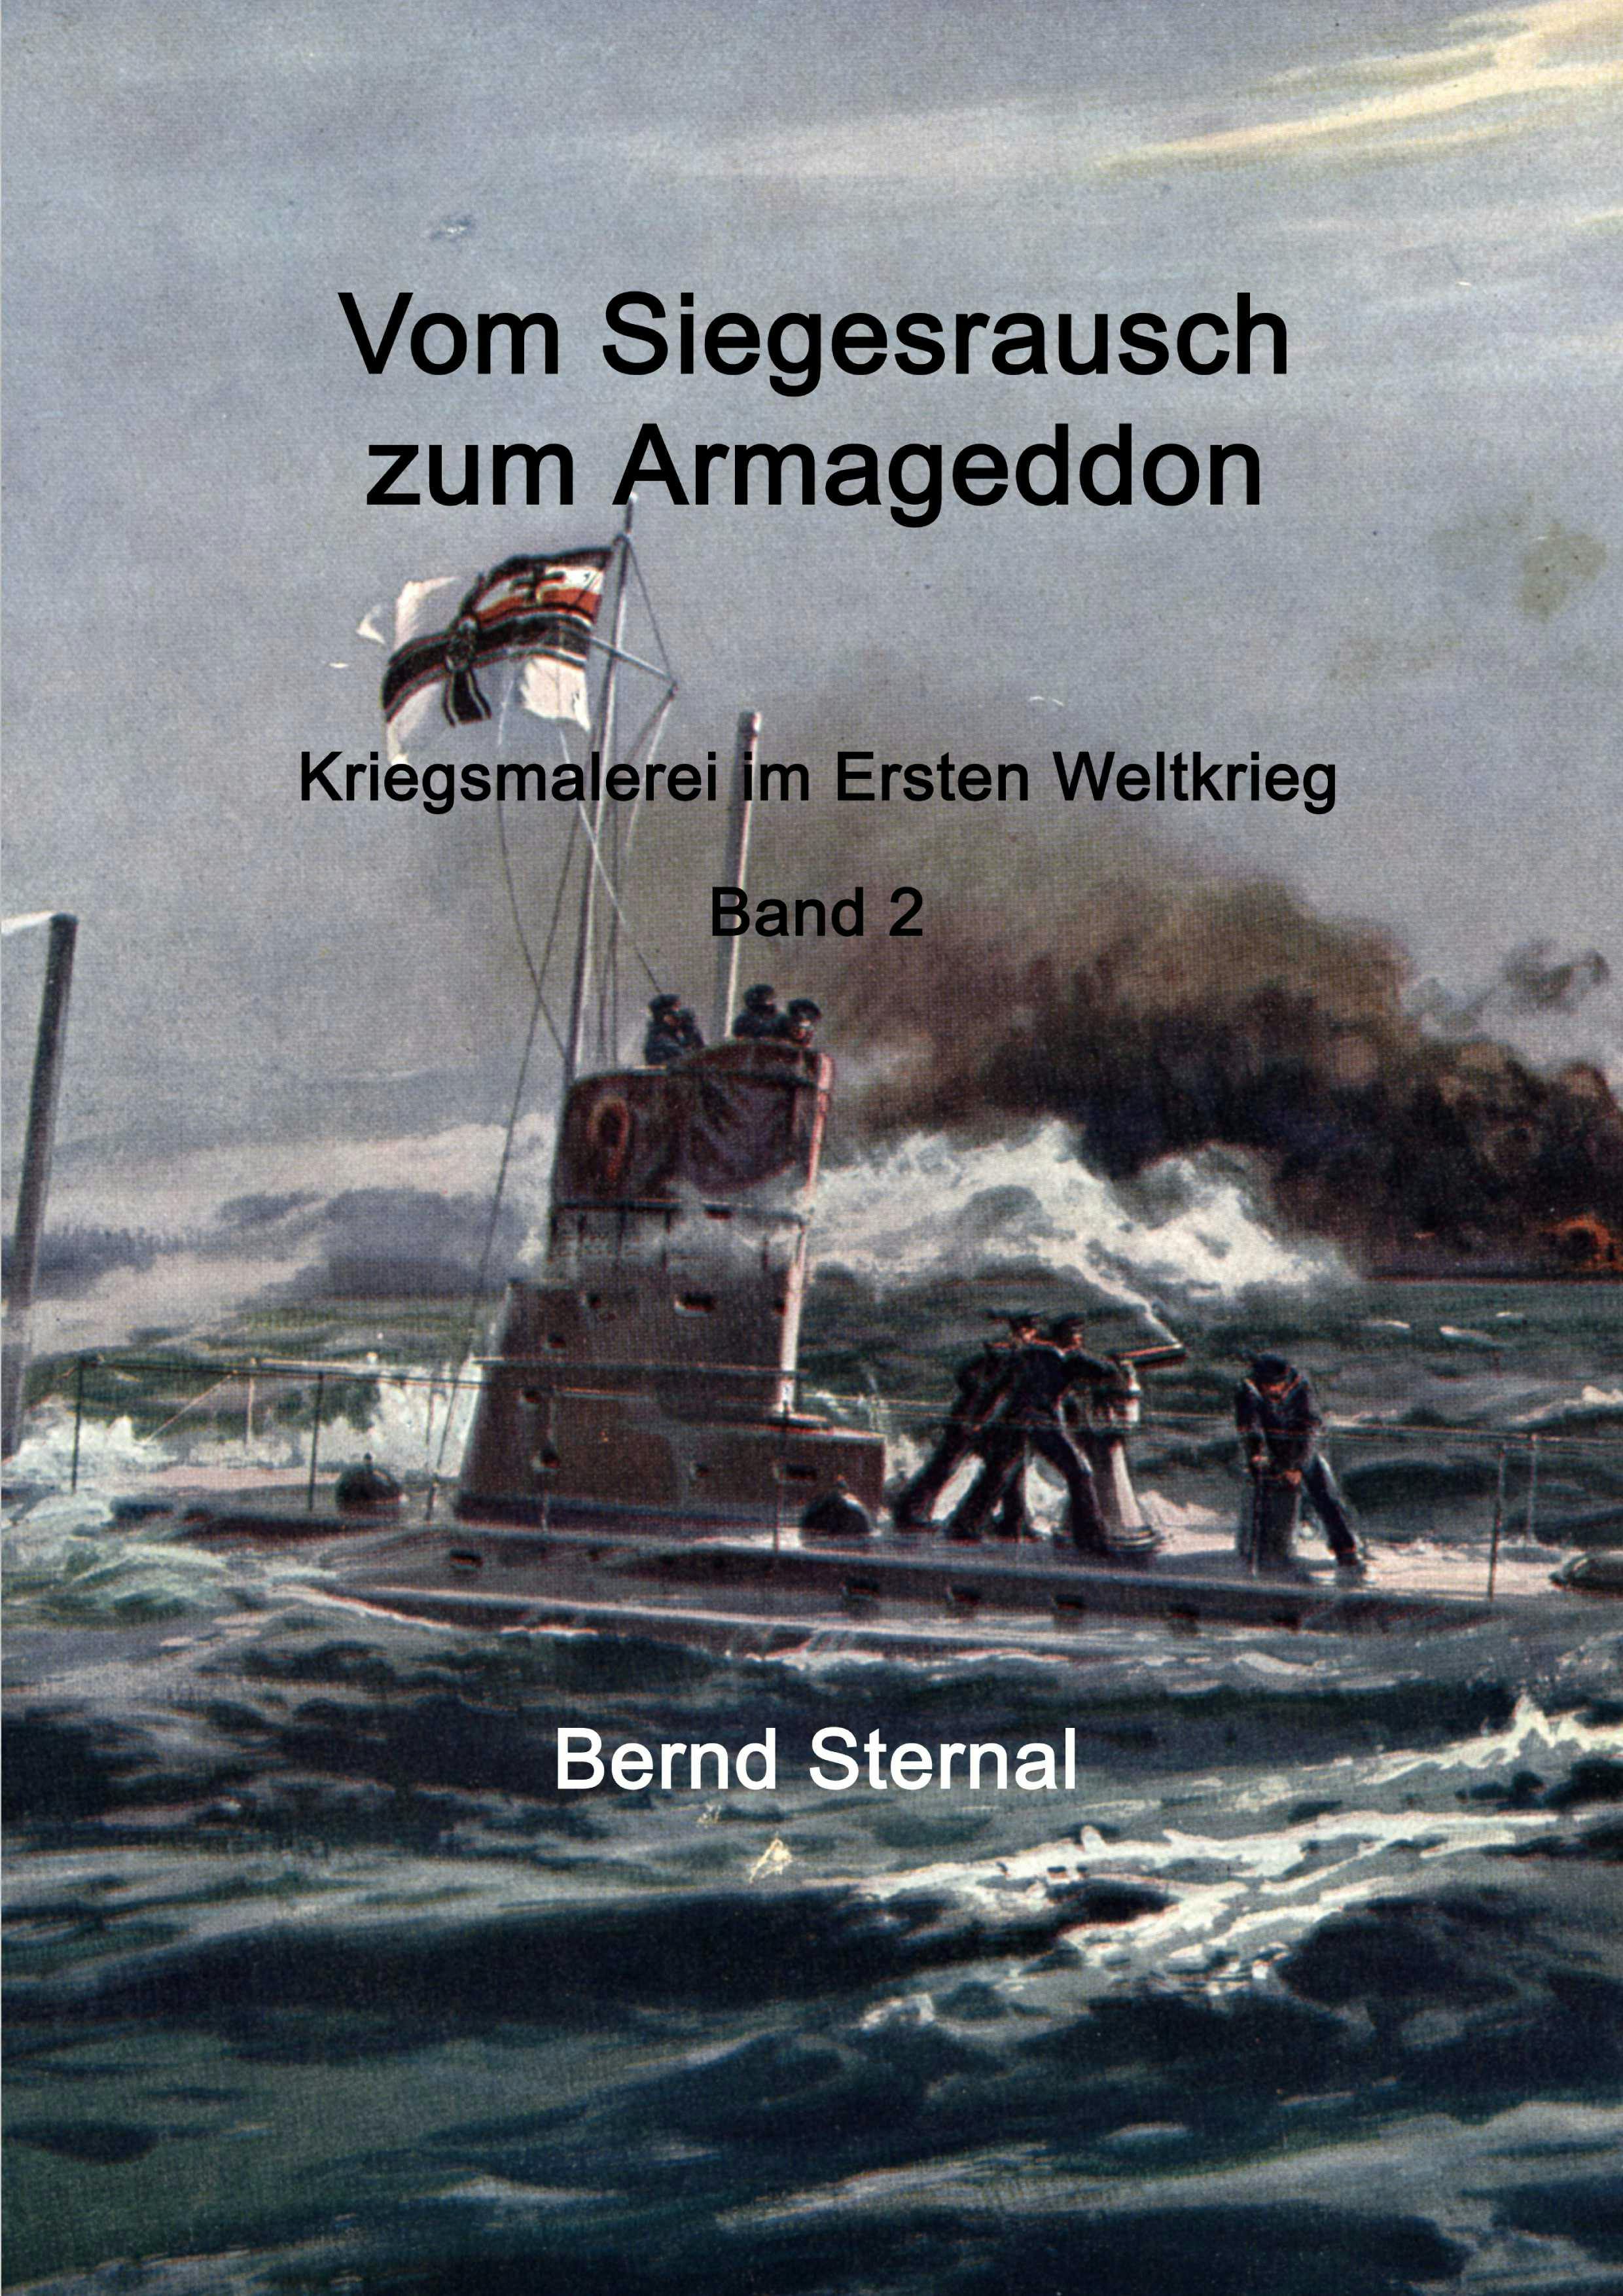 Vom Siegesrausch zum Armageddon - Bernd Sternal